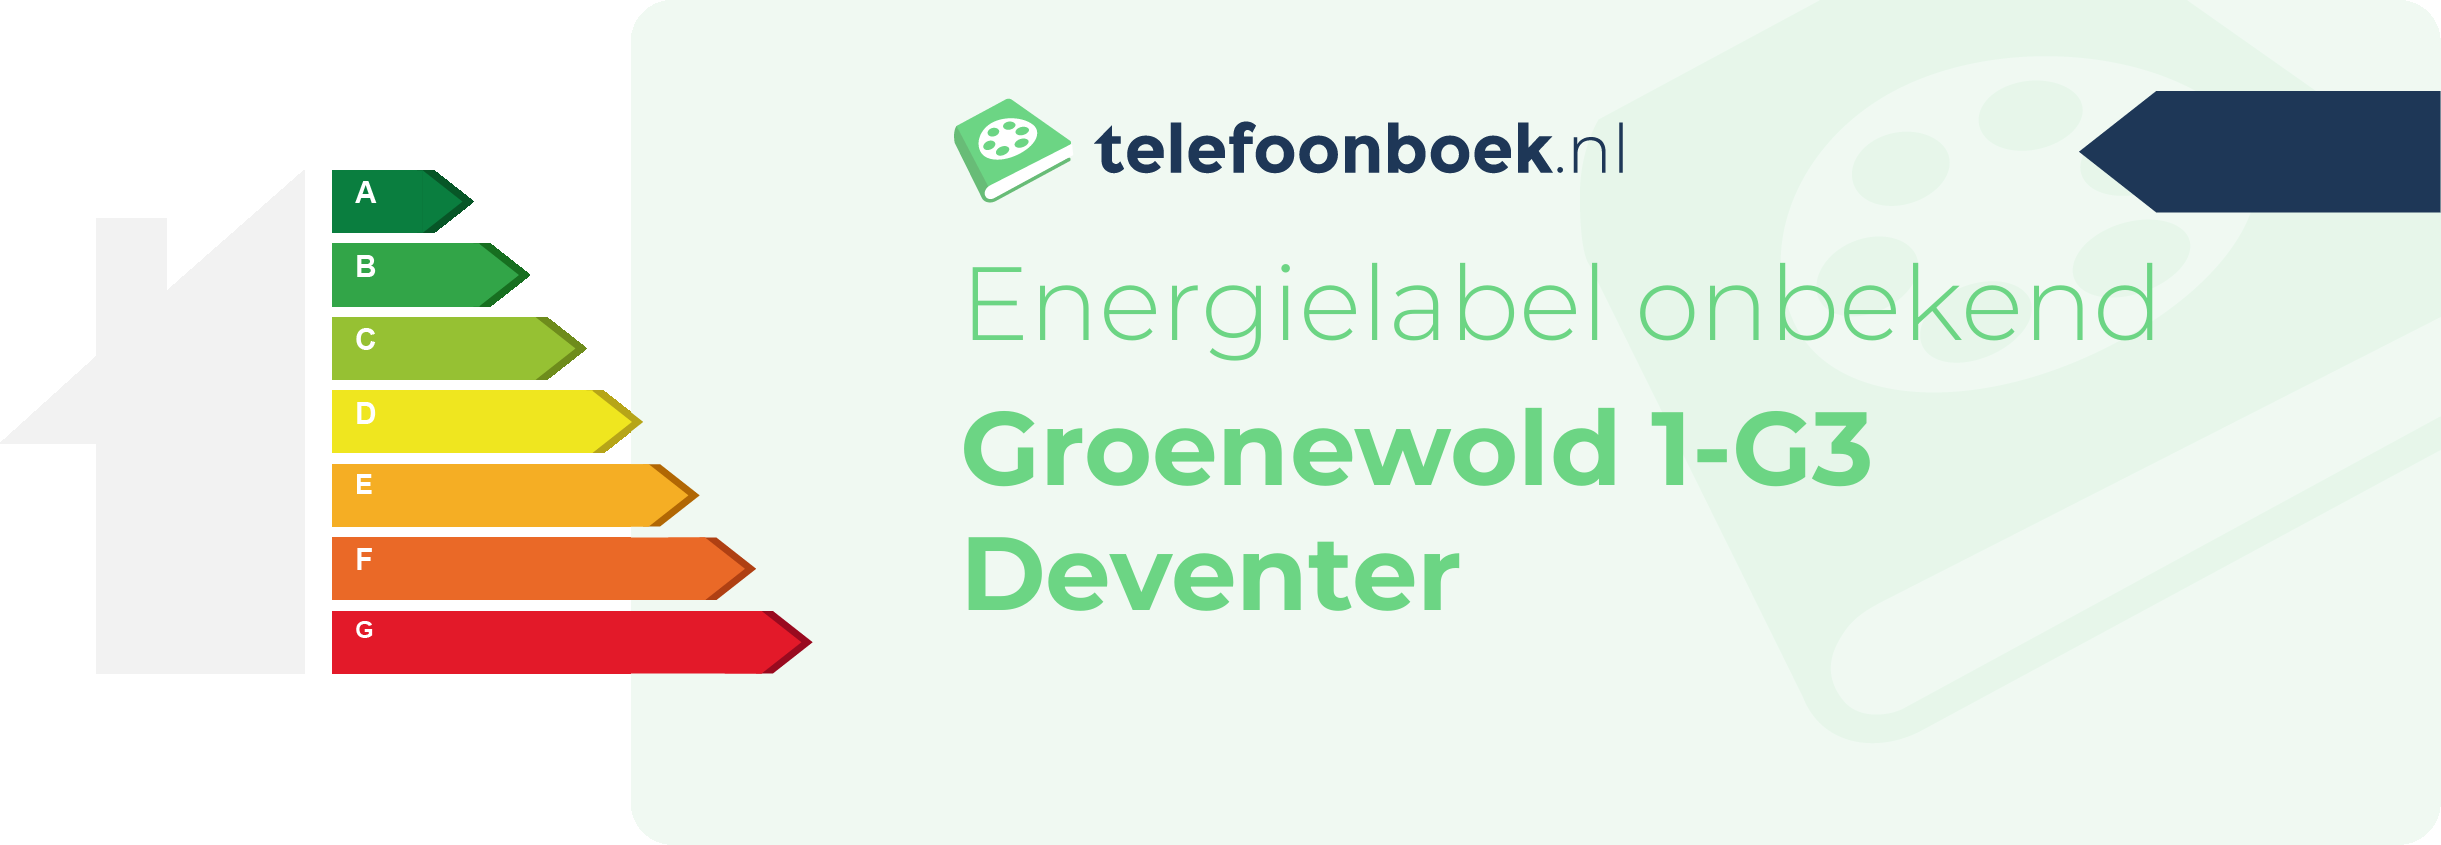 Energielabel Groenewold 1-G3 Deventer